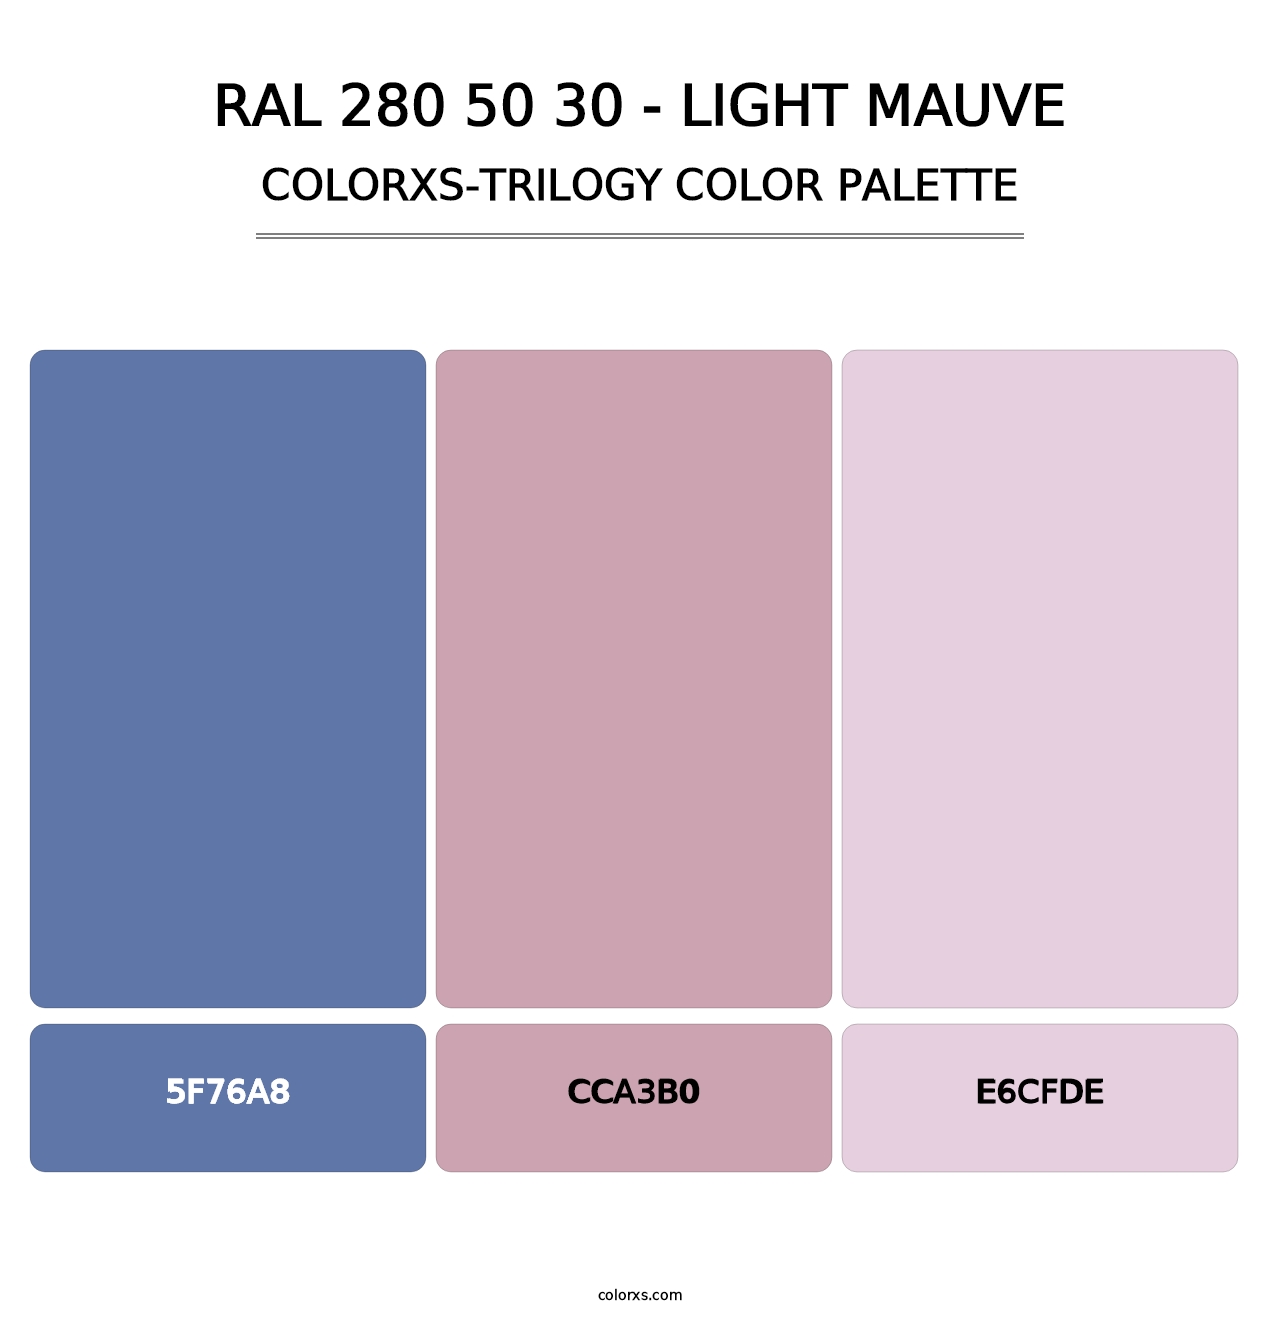 RAL 280 50 30 - Light Mauve - Colorxs Trilogy Palette